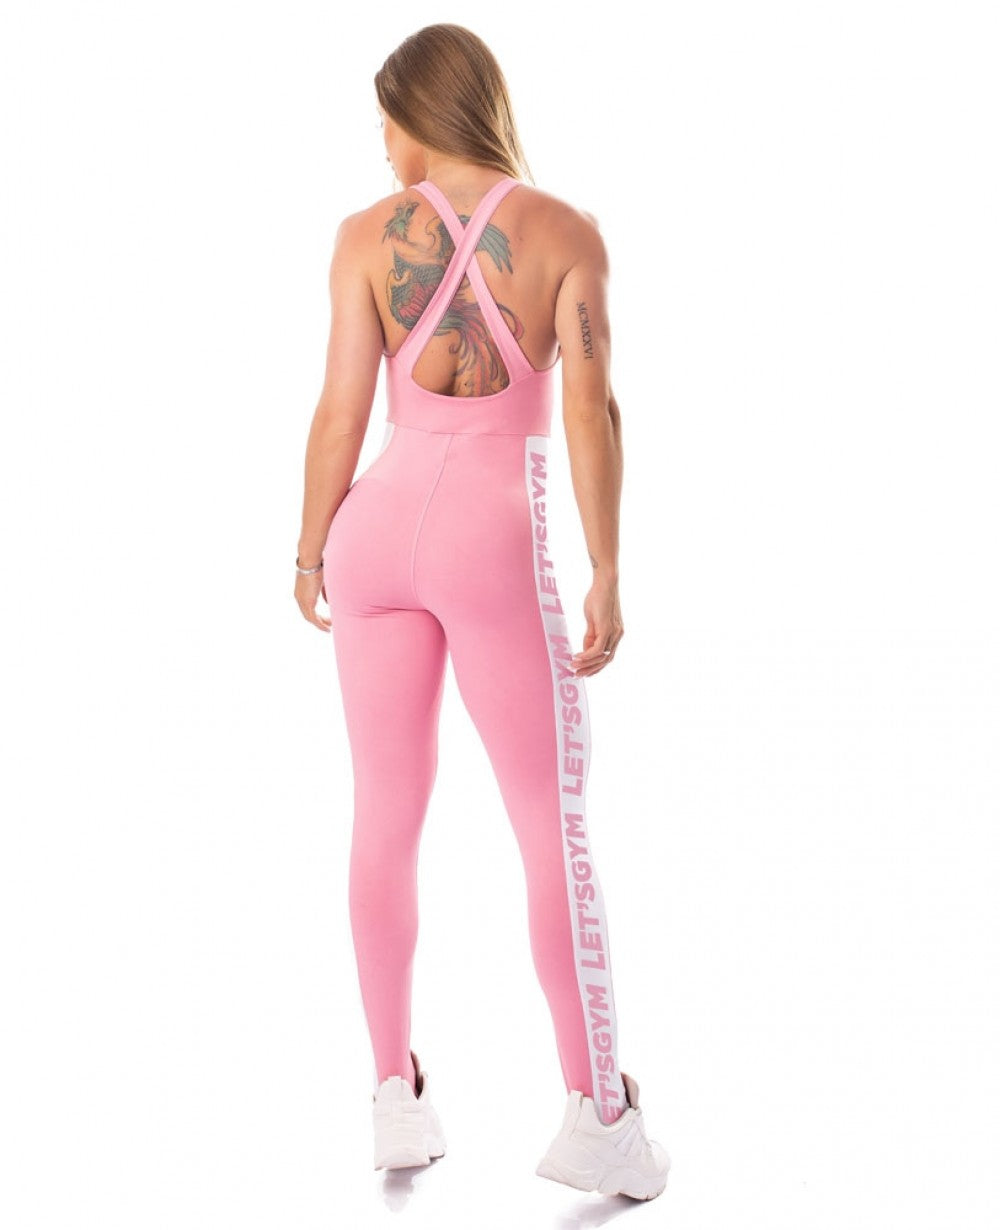 Jumpsuit Pink size M - Rio Brazilian Fashion